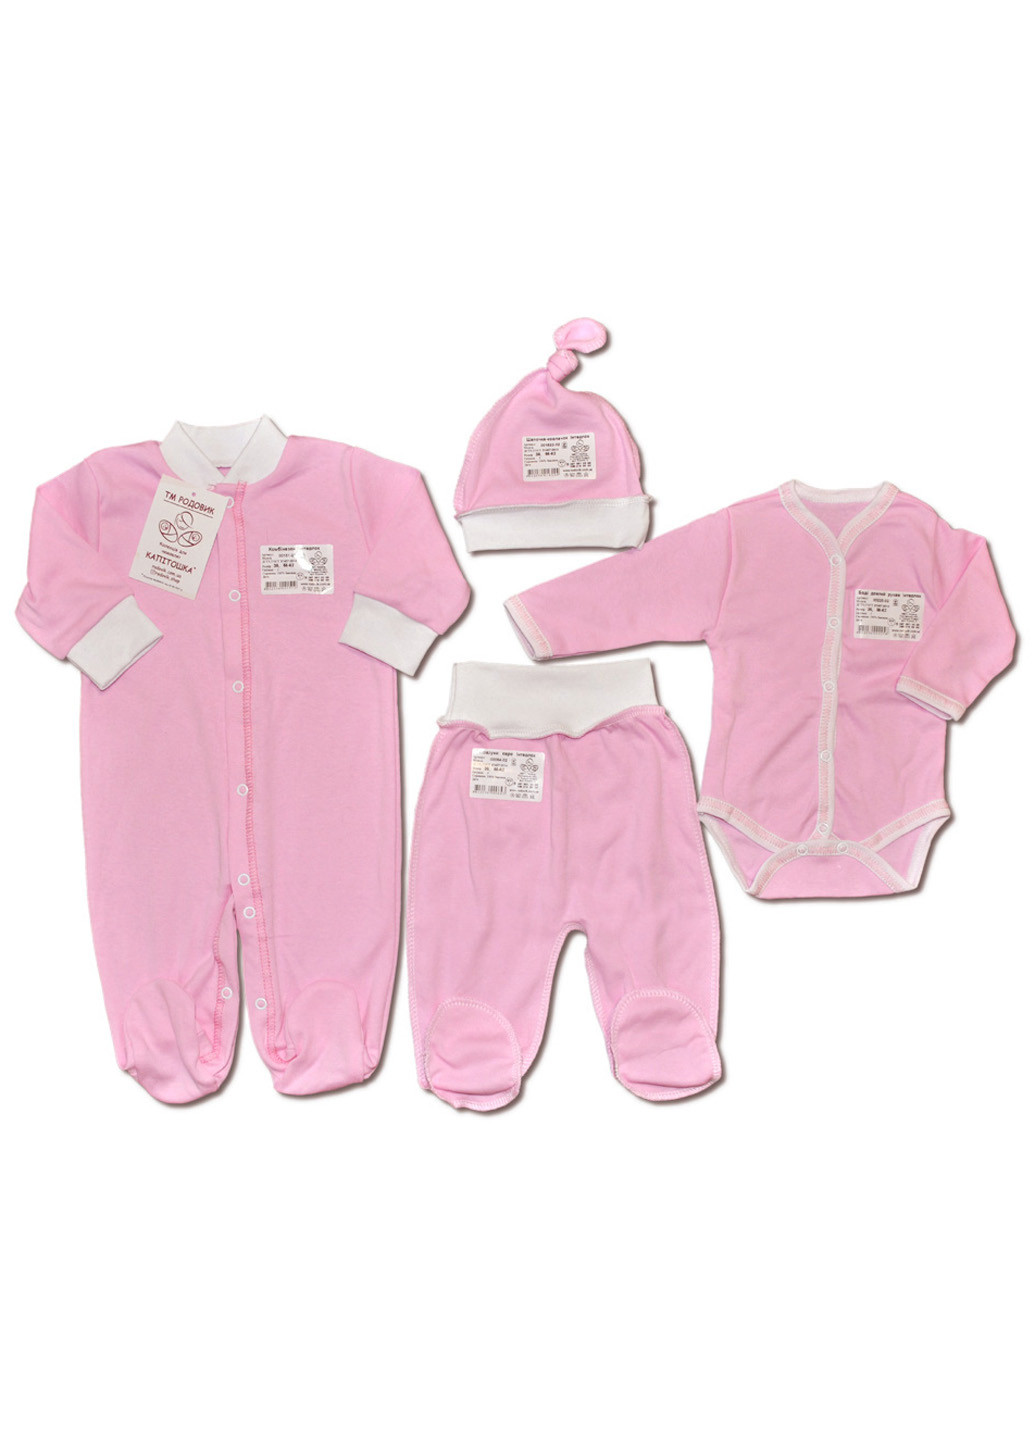 Рожевий демісезонний комплект одягу для малюка №6 (4 предмети) тм колекція капітошка рожевий Родовик комплект 06-КР